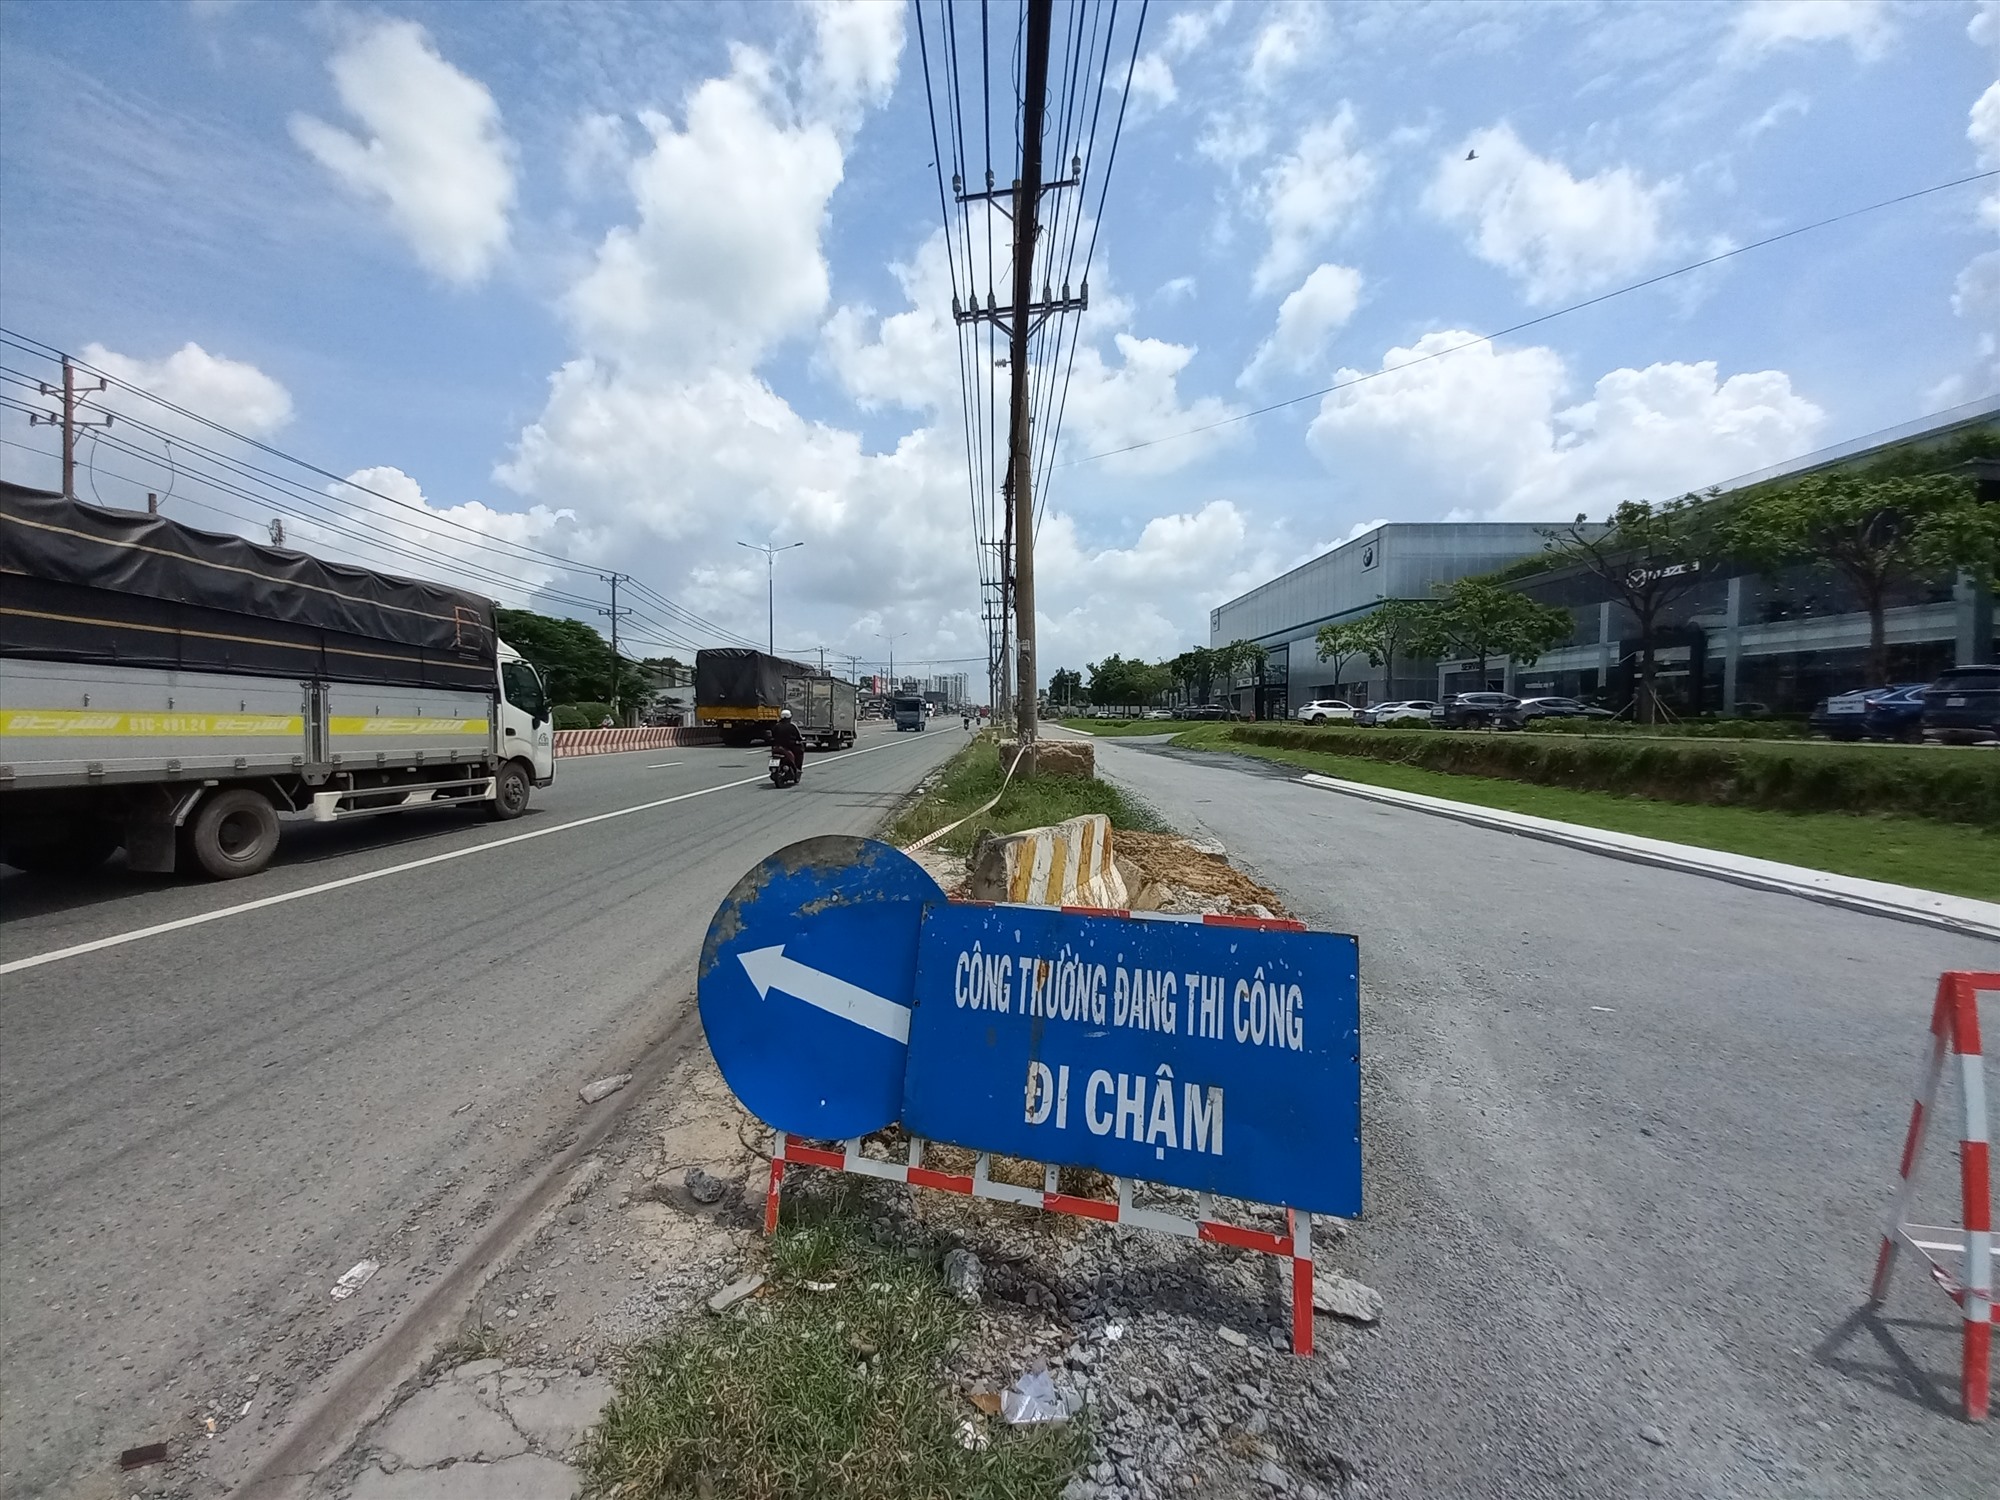 Tuy nhiên, việc xây dựng không được thực hiện đồng điều, ở nhiều đoạn đường lưới điện gần như nằm chìa ra giữa đường. Anh Nguyễn Thanh Hải (40 tuổi, ngụ phường Lái Thiêu, thành phố Thuận An) cho biết thường xuyên đi làm về trên tuyến đường này.